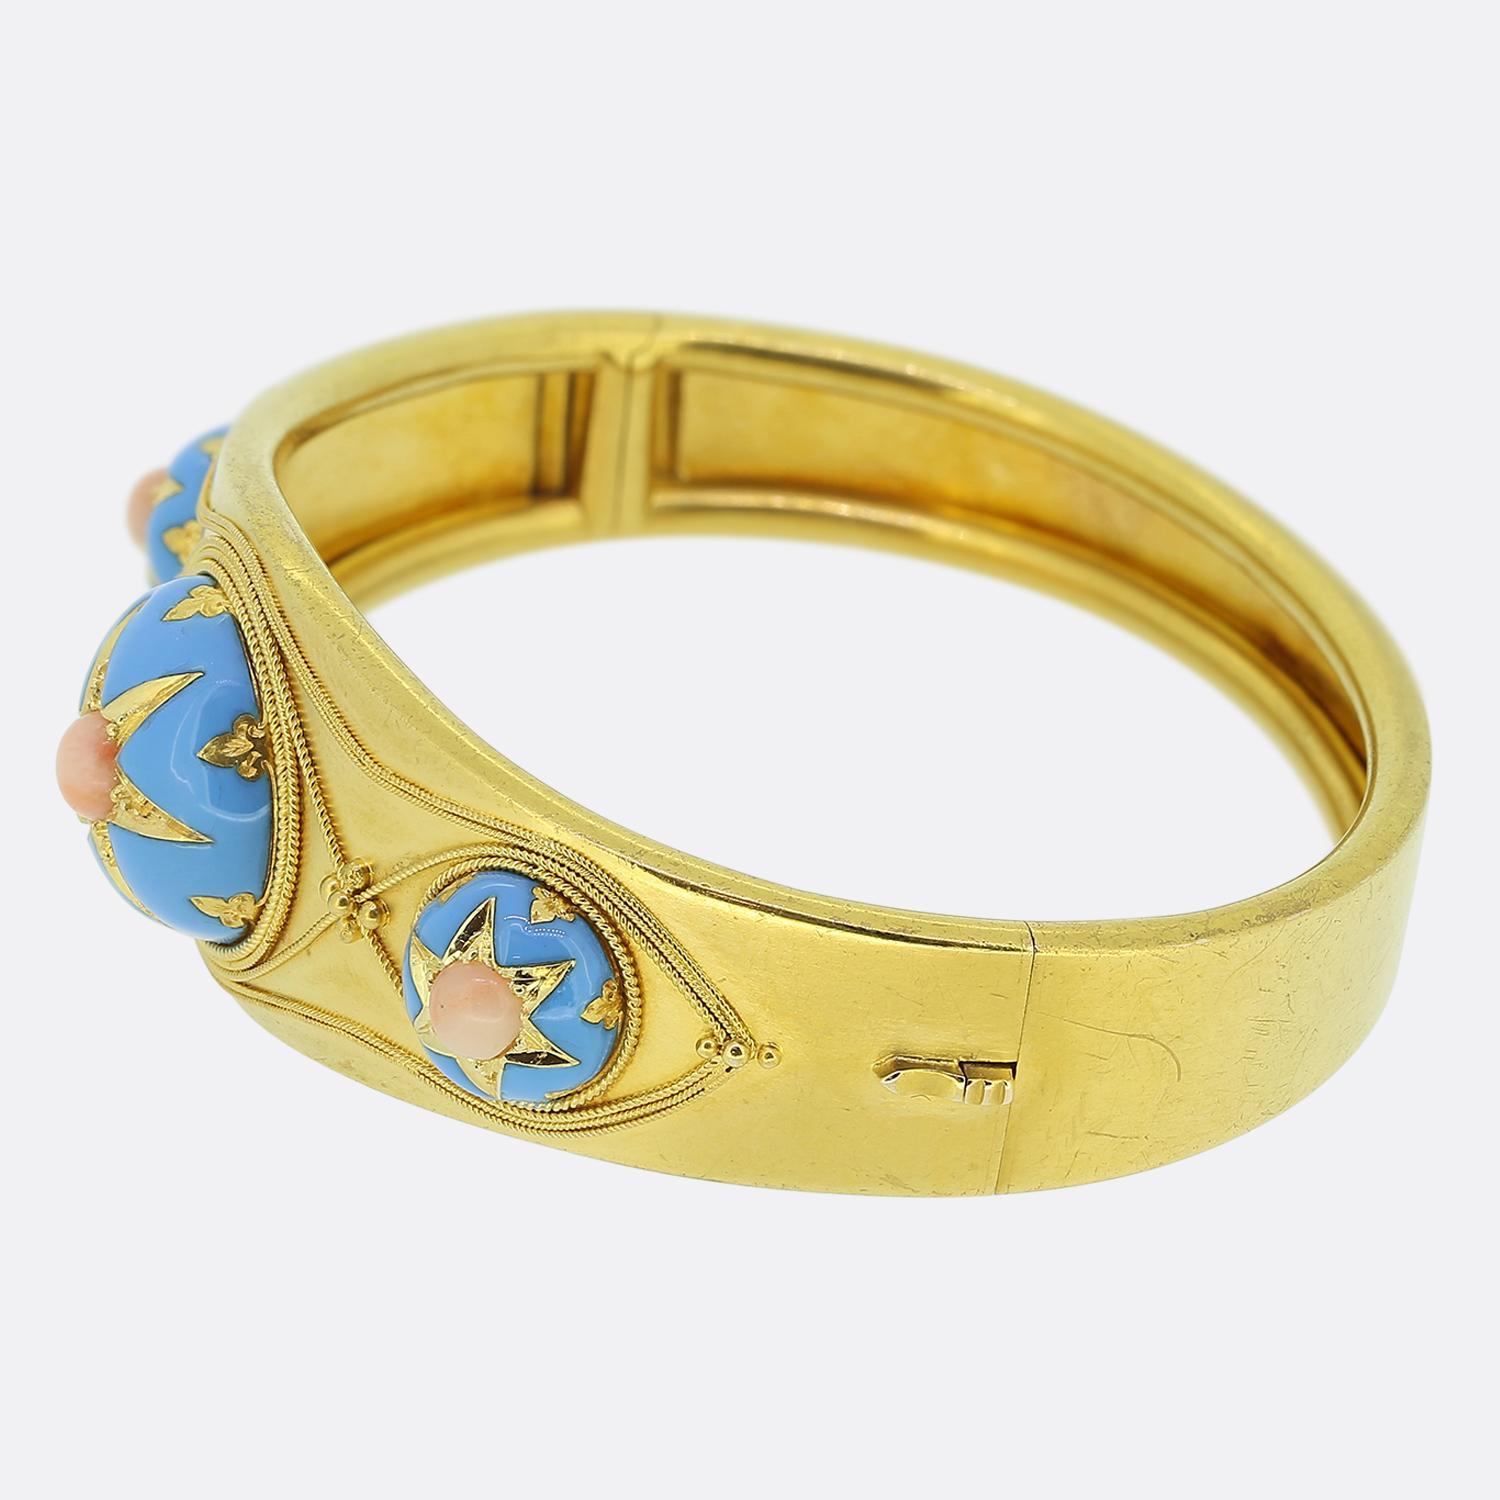 Hier haben wir ein wunderschönes Goldarmband aus der viktorianischen Ära. Dieses Armband aus 15 Karat Gelbgold ist im etruskischen Stil gefertigt und zeigt drei Korallen, die von blauer Emaille umgeben sind, die in perfektem Zustand ist. Die blaue